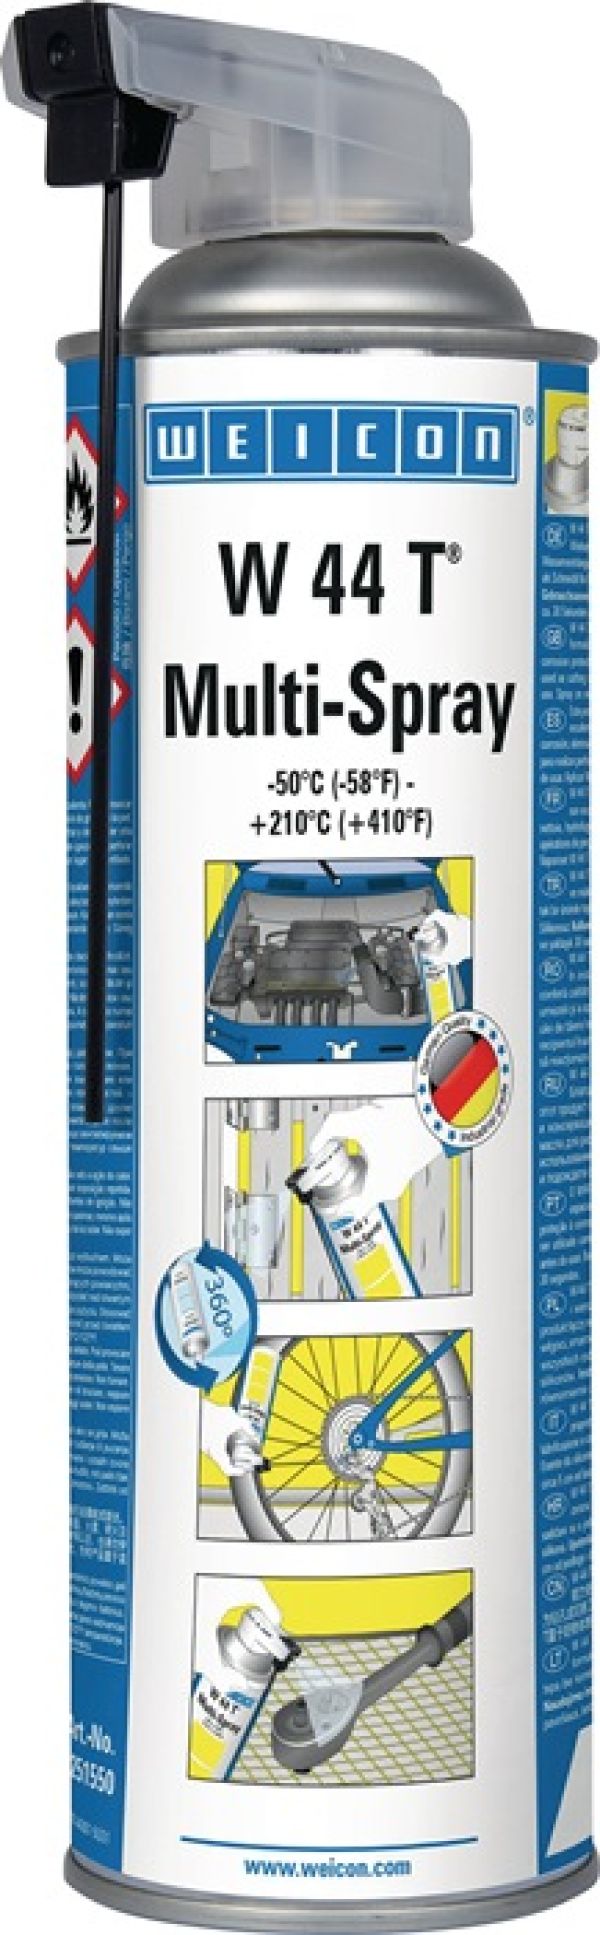 Multifunktionsöl W 44 T® Multi-Spray WEICON